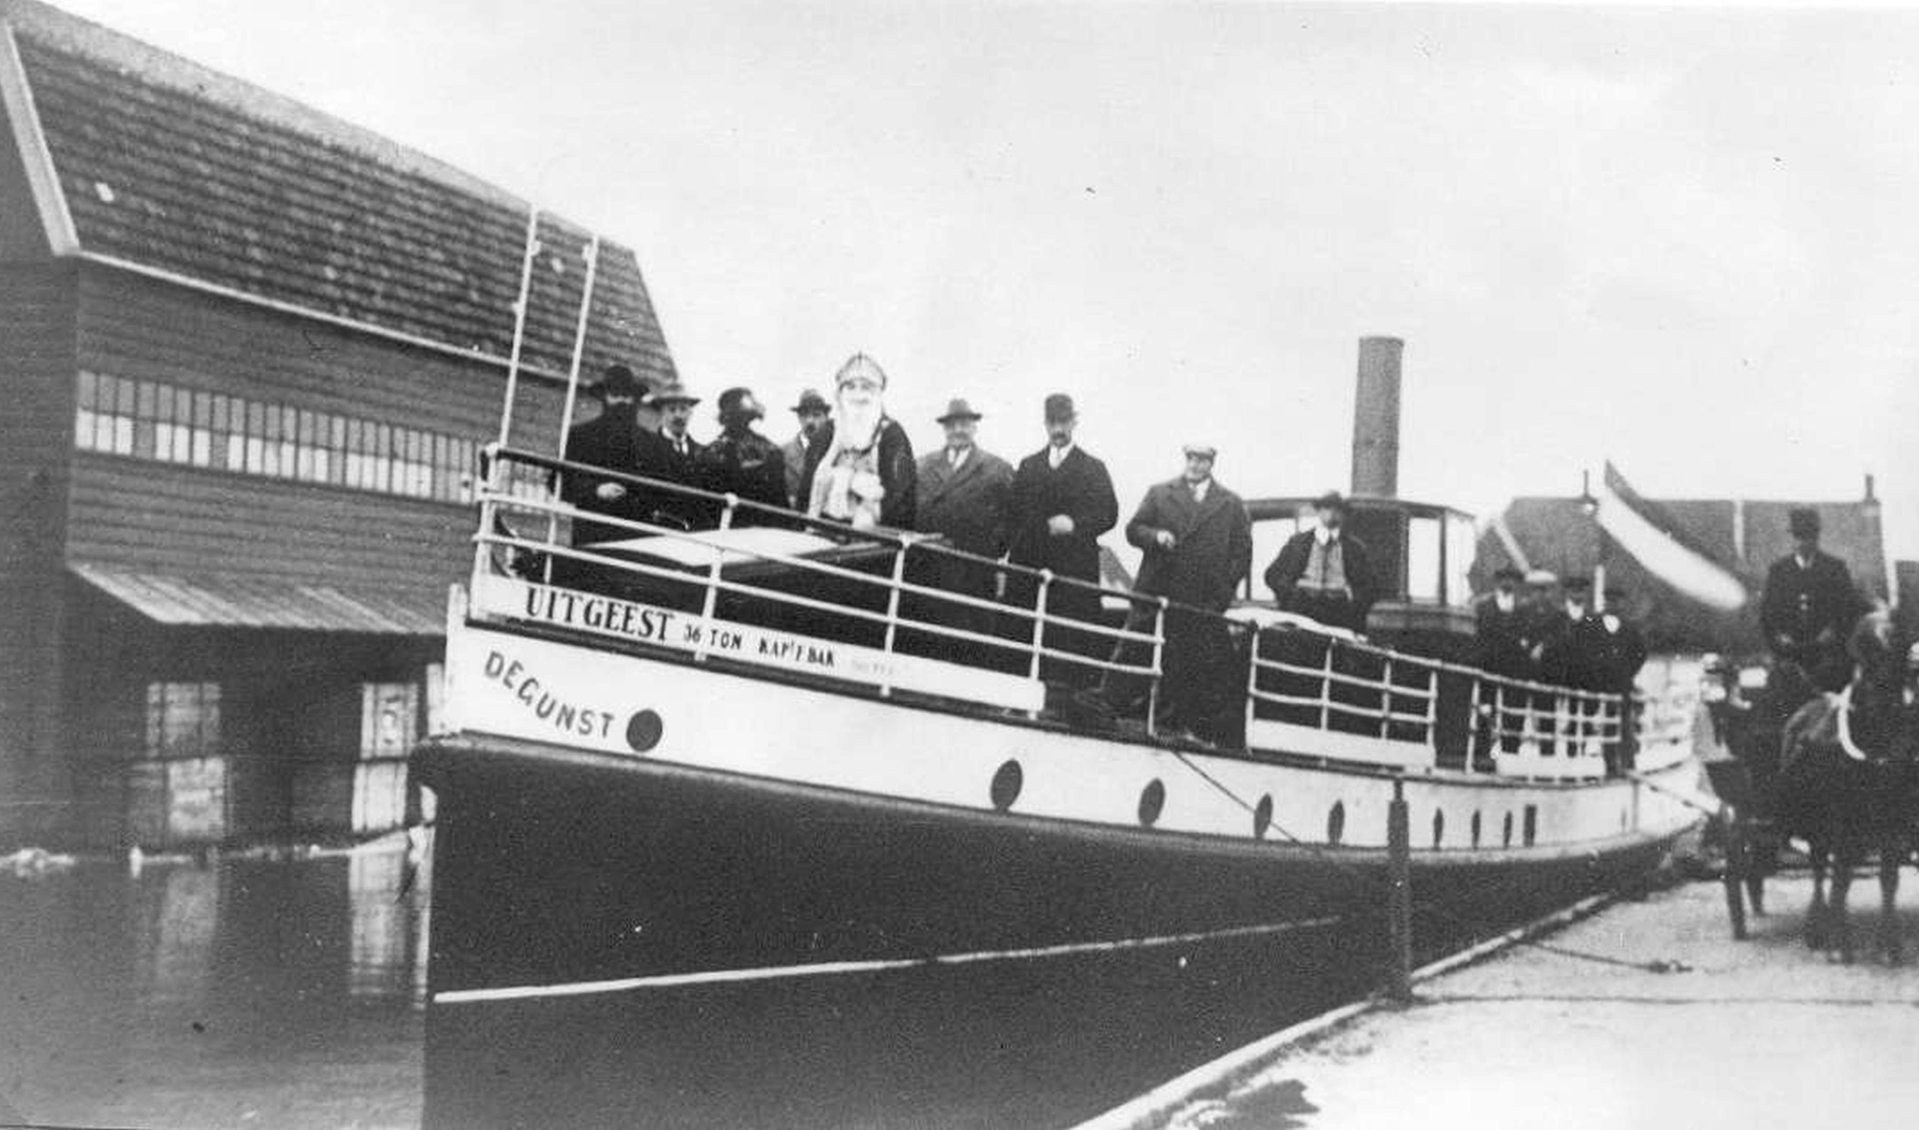 Motorboot ‘De Gunst’ in de Gemeentehaven – BB 06243.